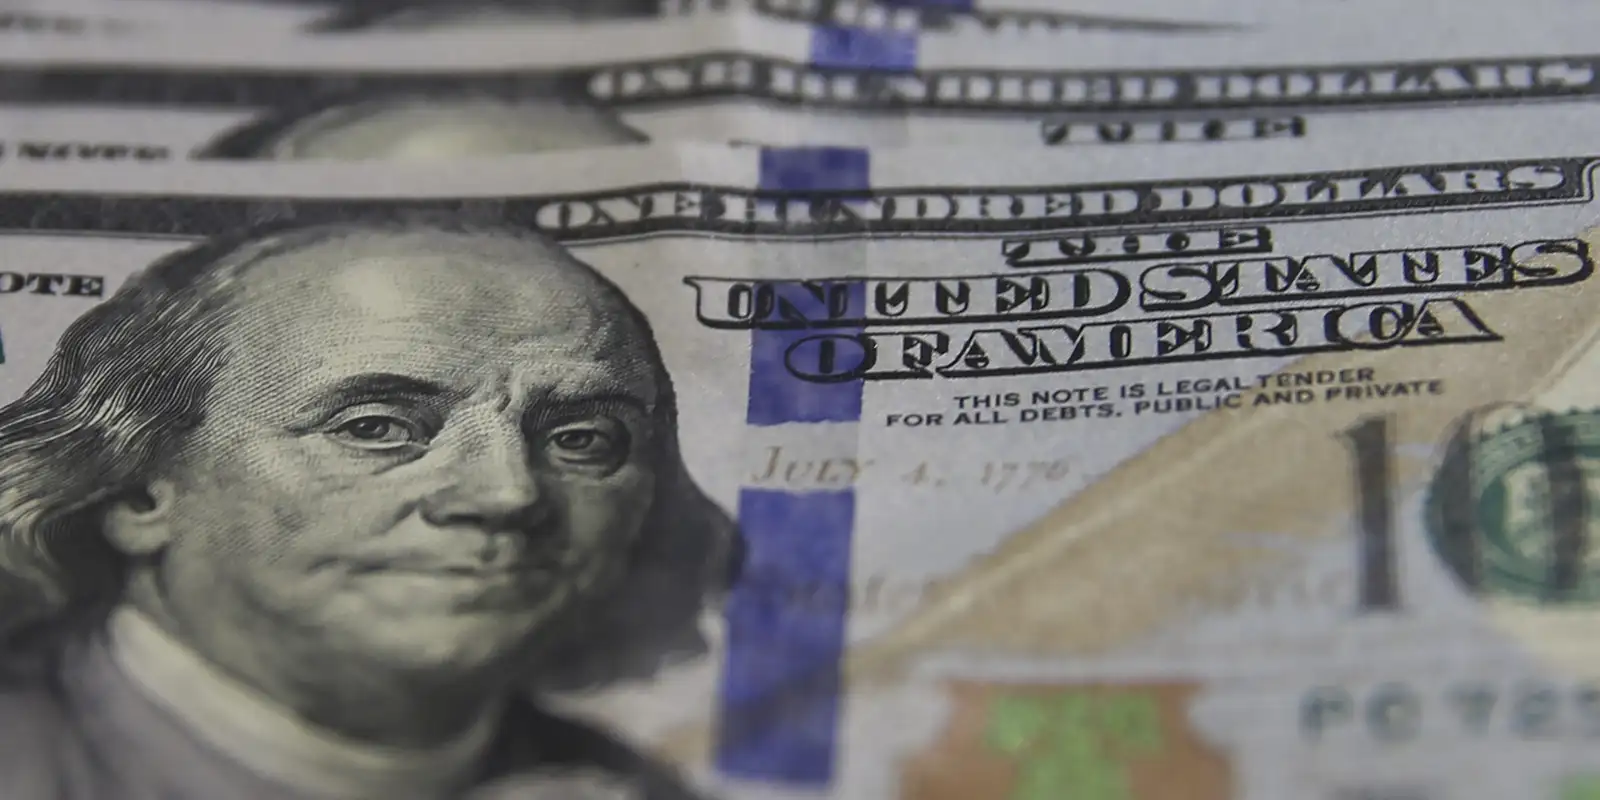 Dólar cai para R$ 4,85 e atinge menor valor do ano